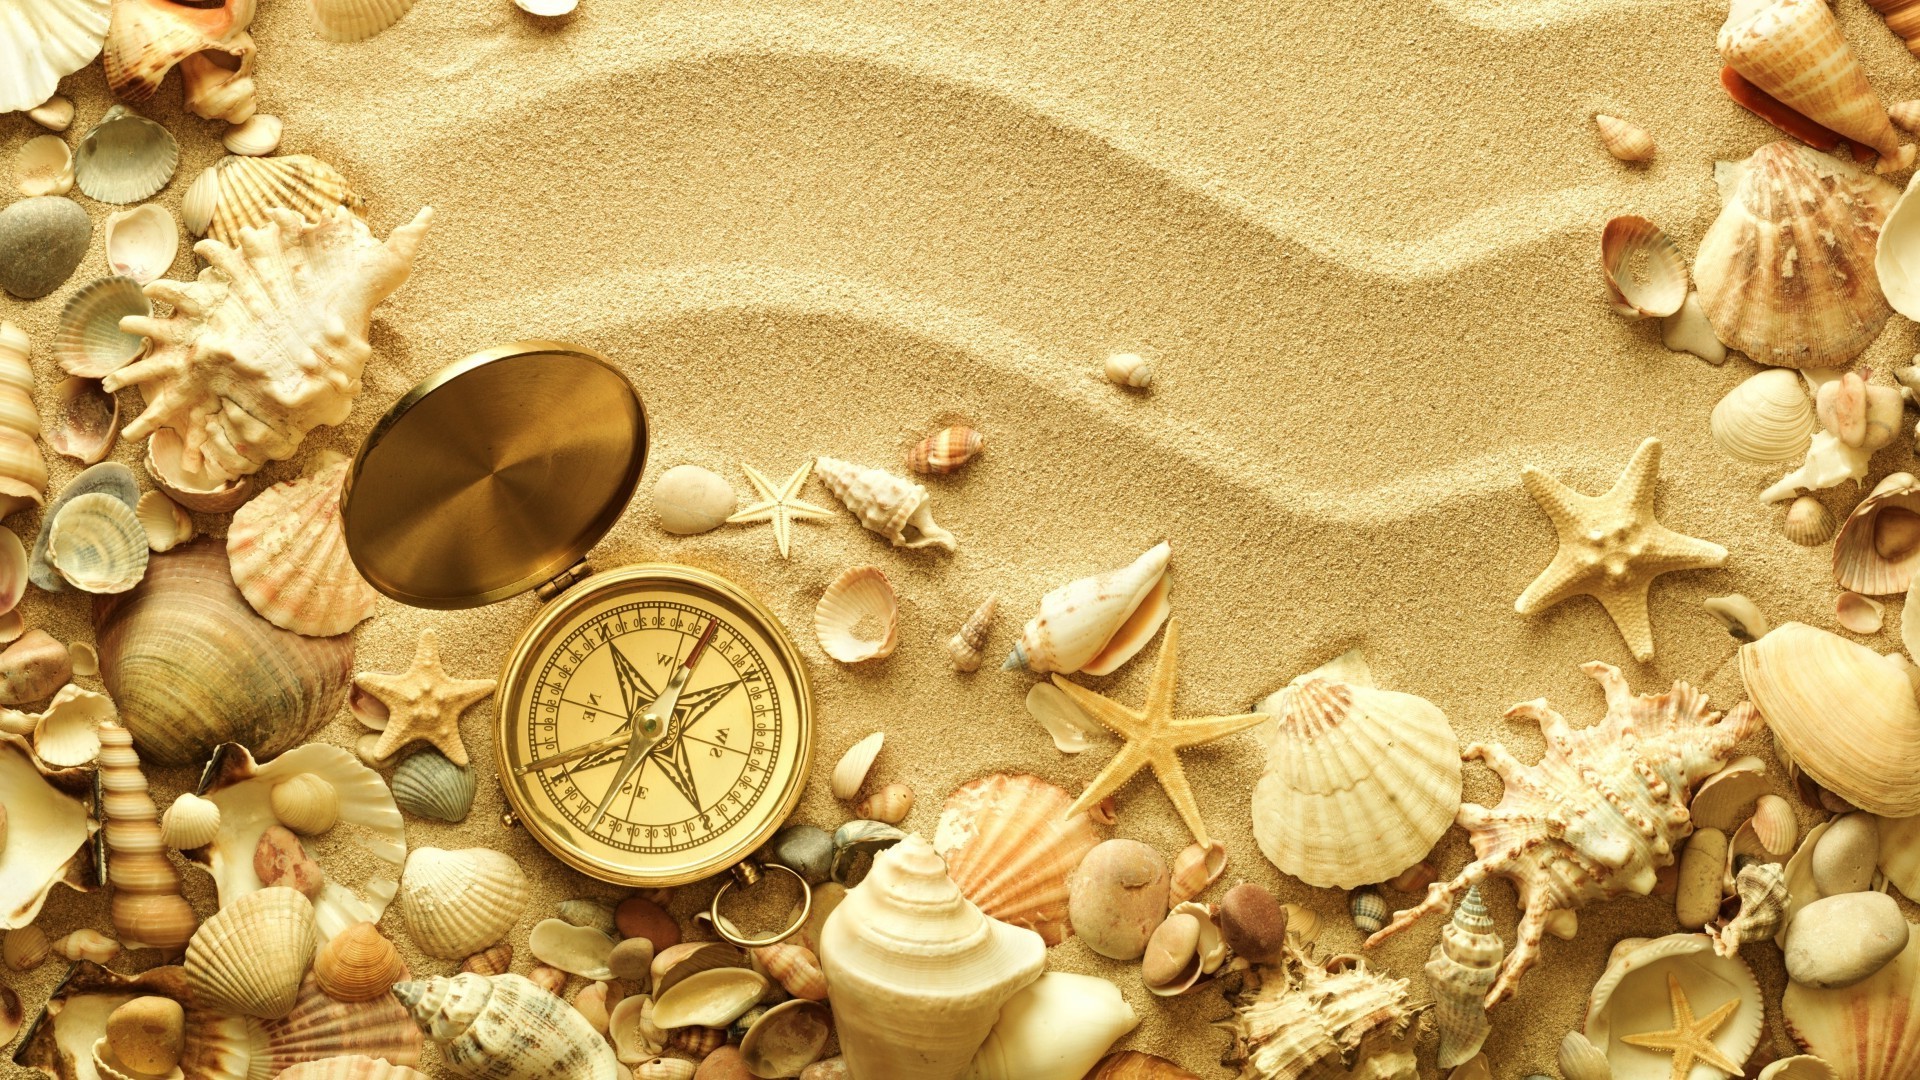 контрасты ракушек оболочка пляж морская звезда песок моря рабочего стола морской украшения море золото конч текстура сувенир отпуск формы природа дизайн